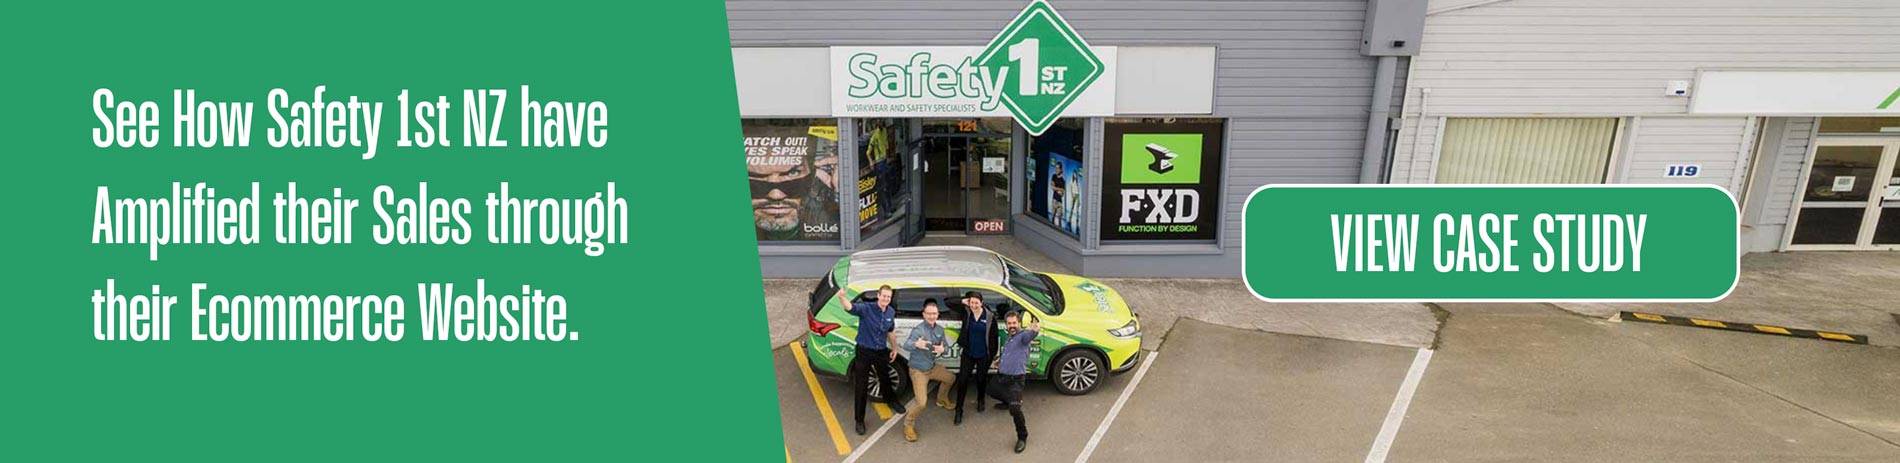 Safety 1st NZ E-commerce Platform Case study cta